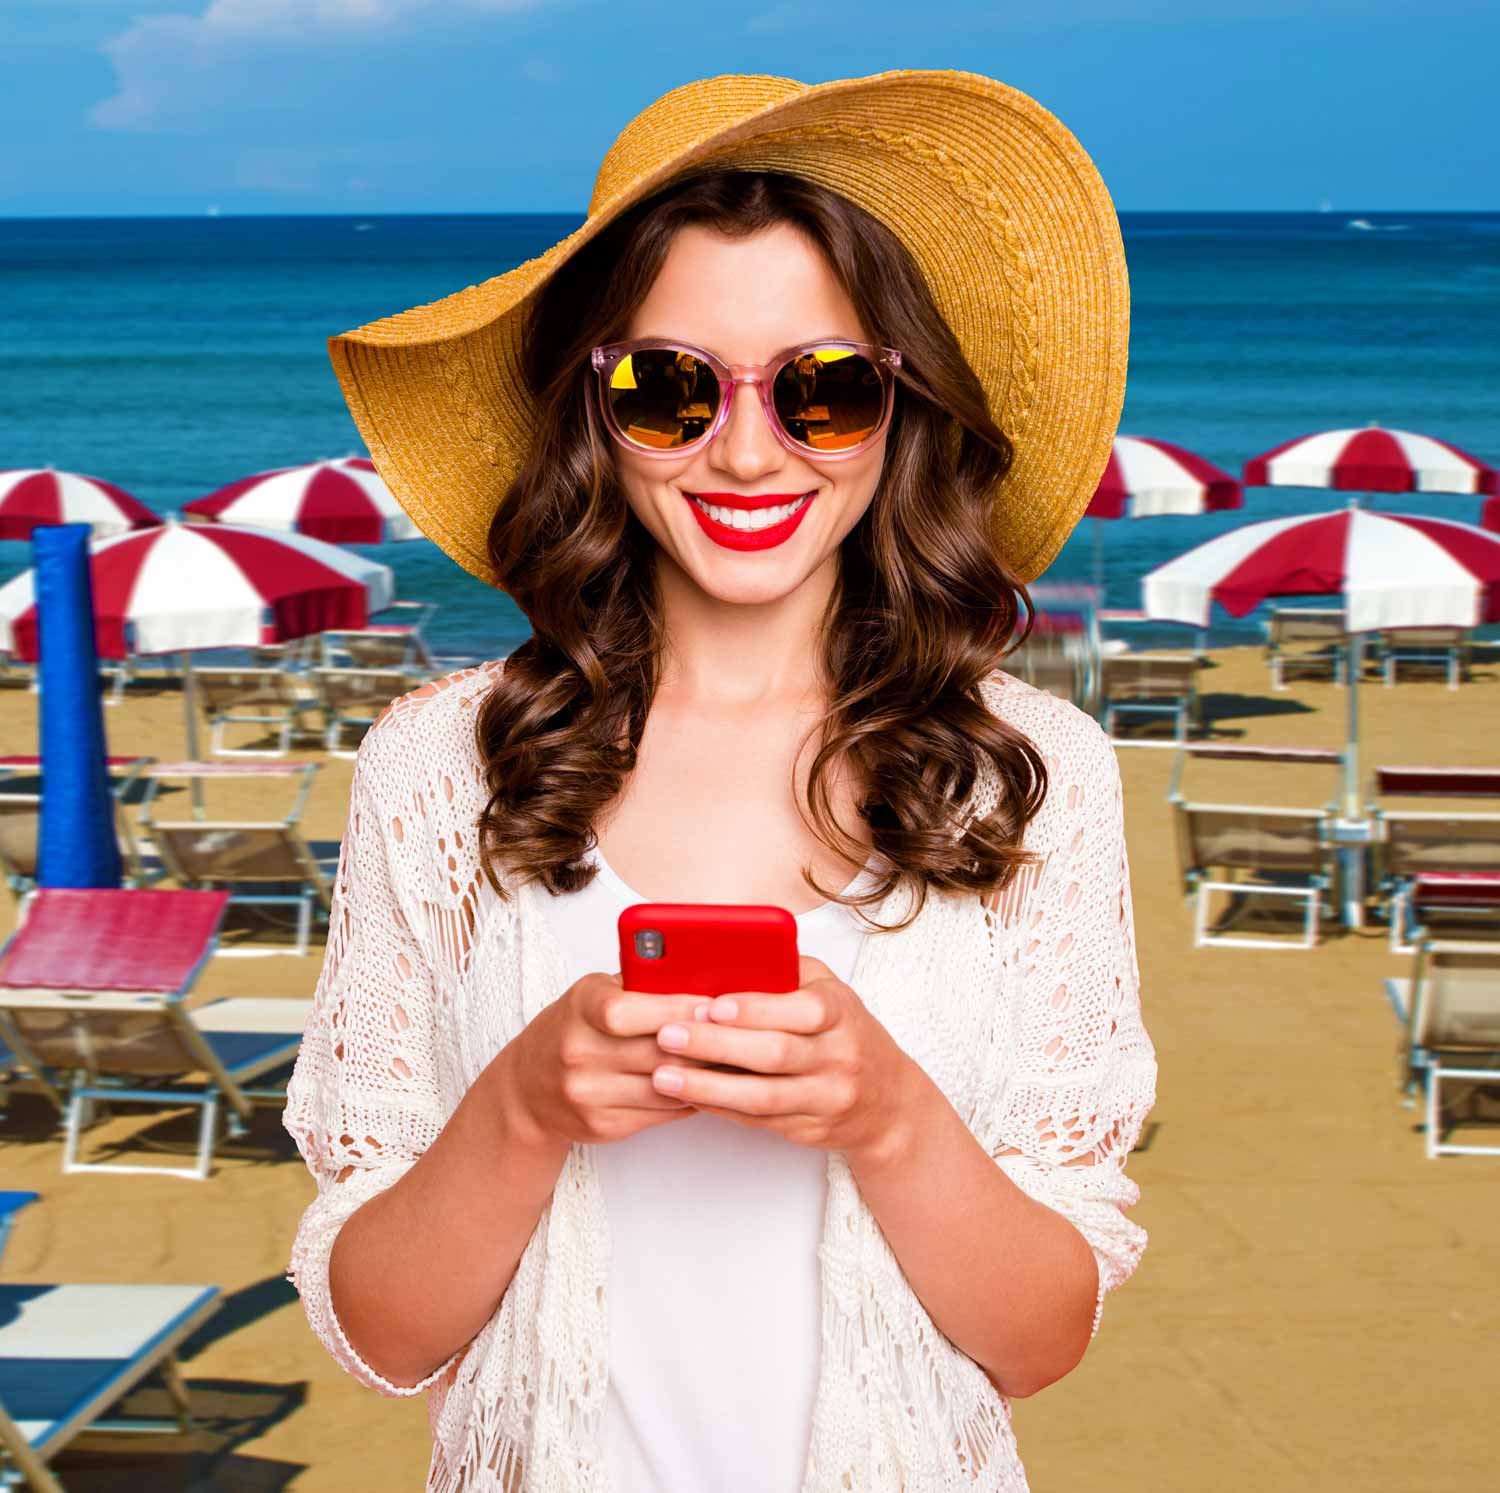 Ragazza in spiaggia con smartphone